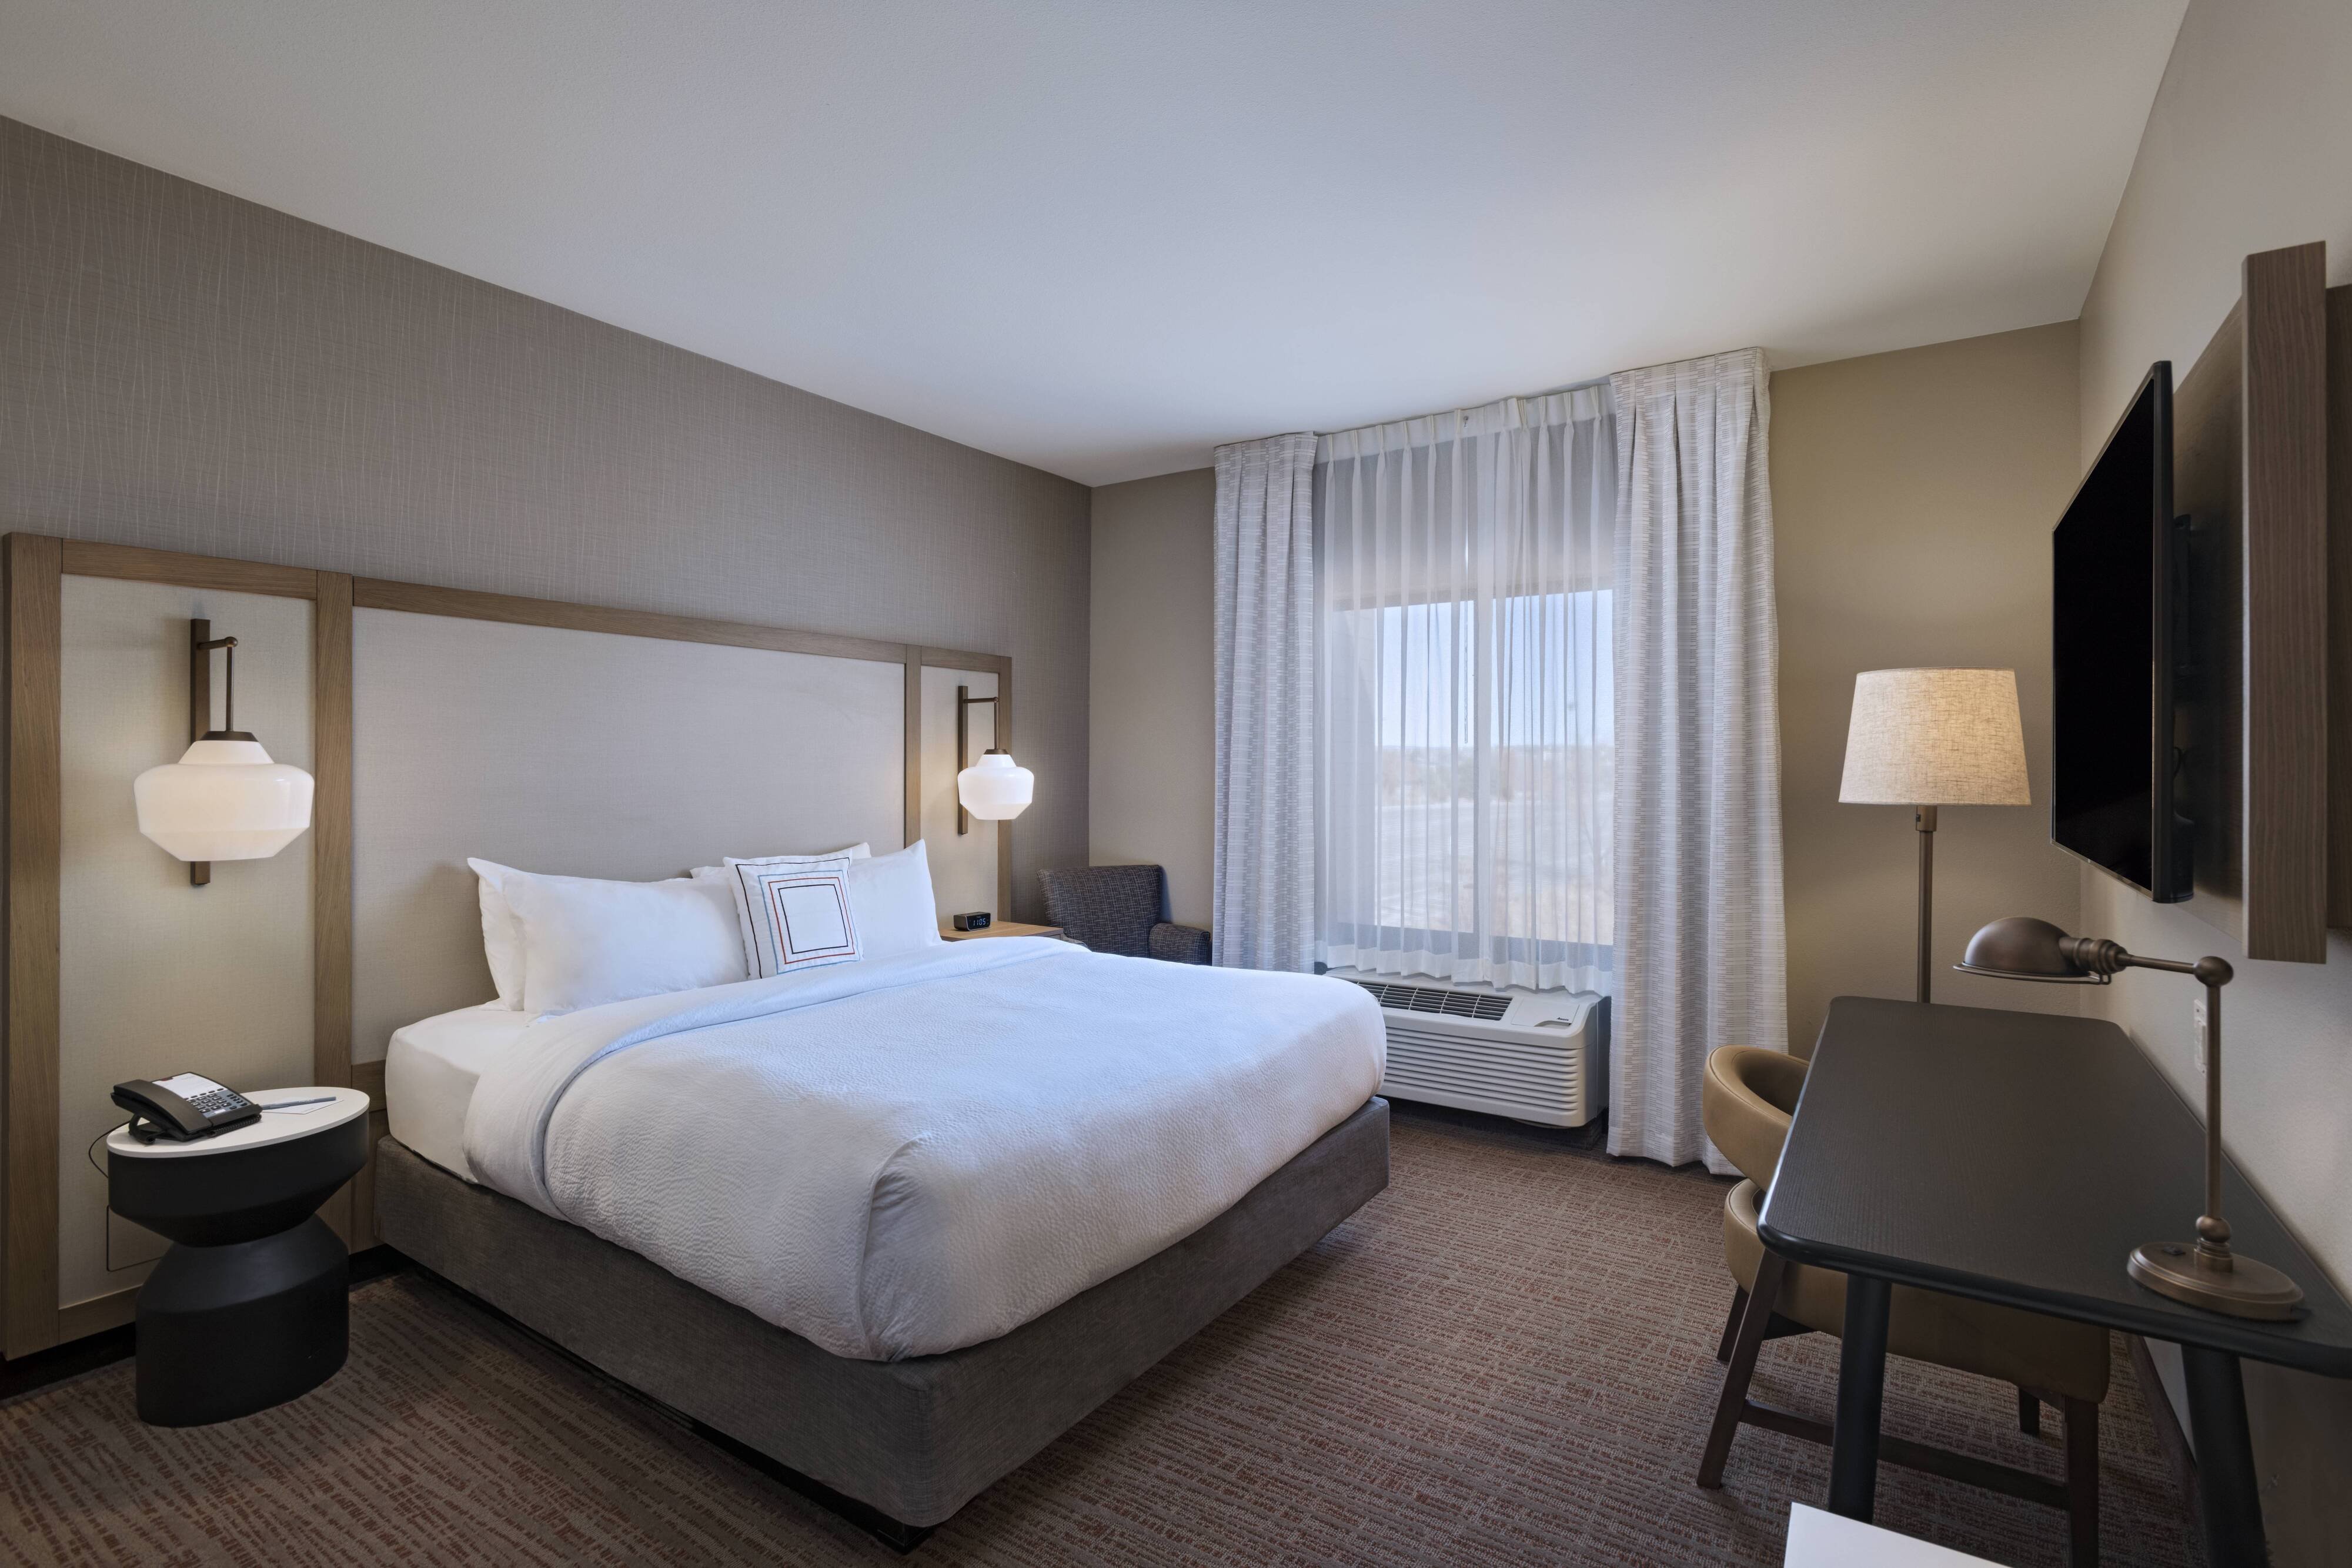 Fairfield Inn & Suites by Marriott Colorado Springs East-Colorado Springs  Updated 2023 Room Price-Reviews & Deals | Trip.com